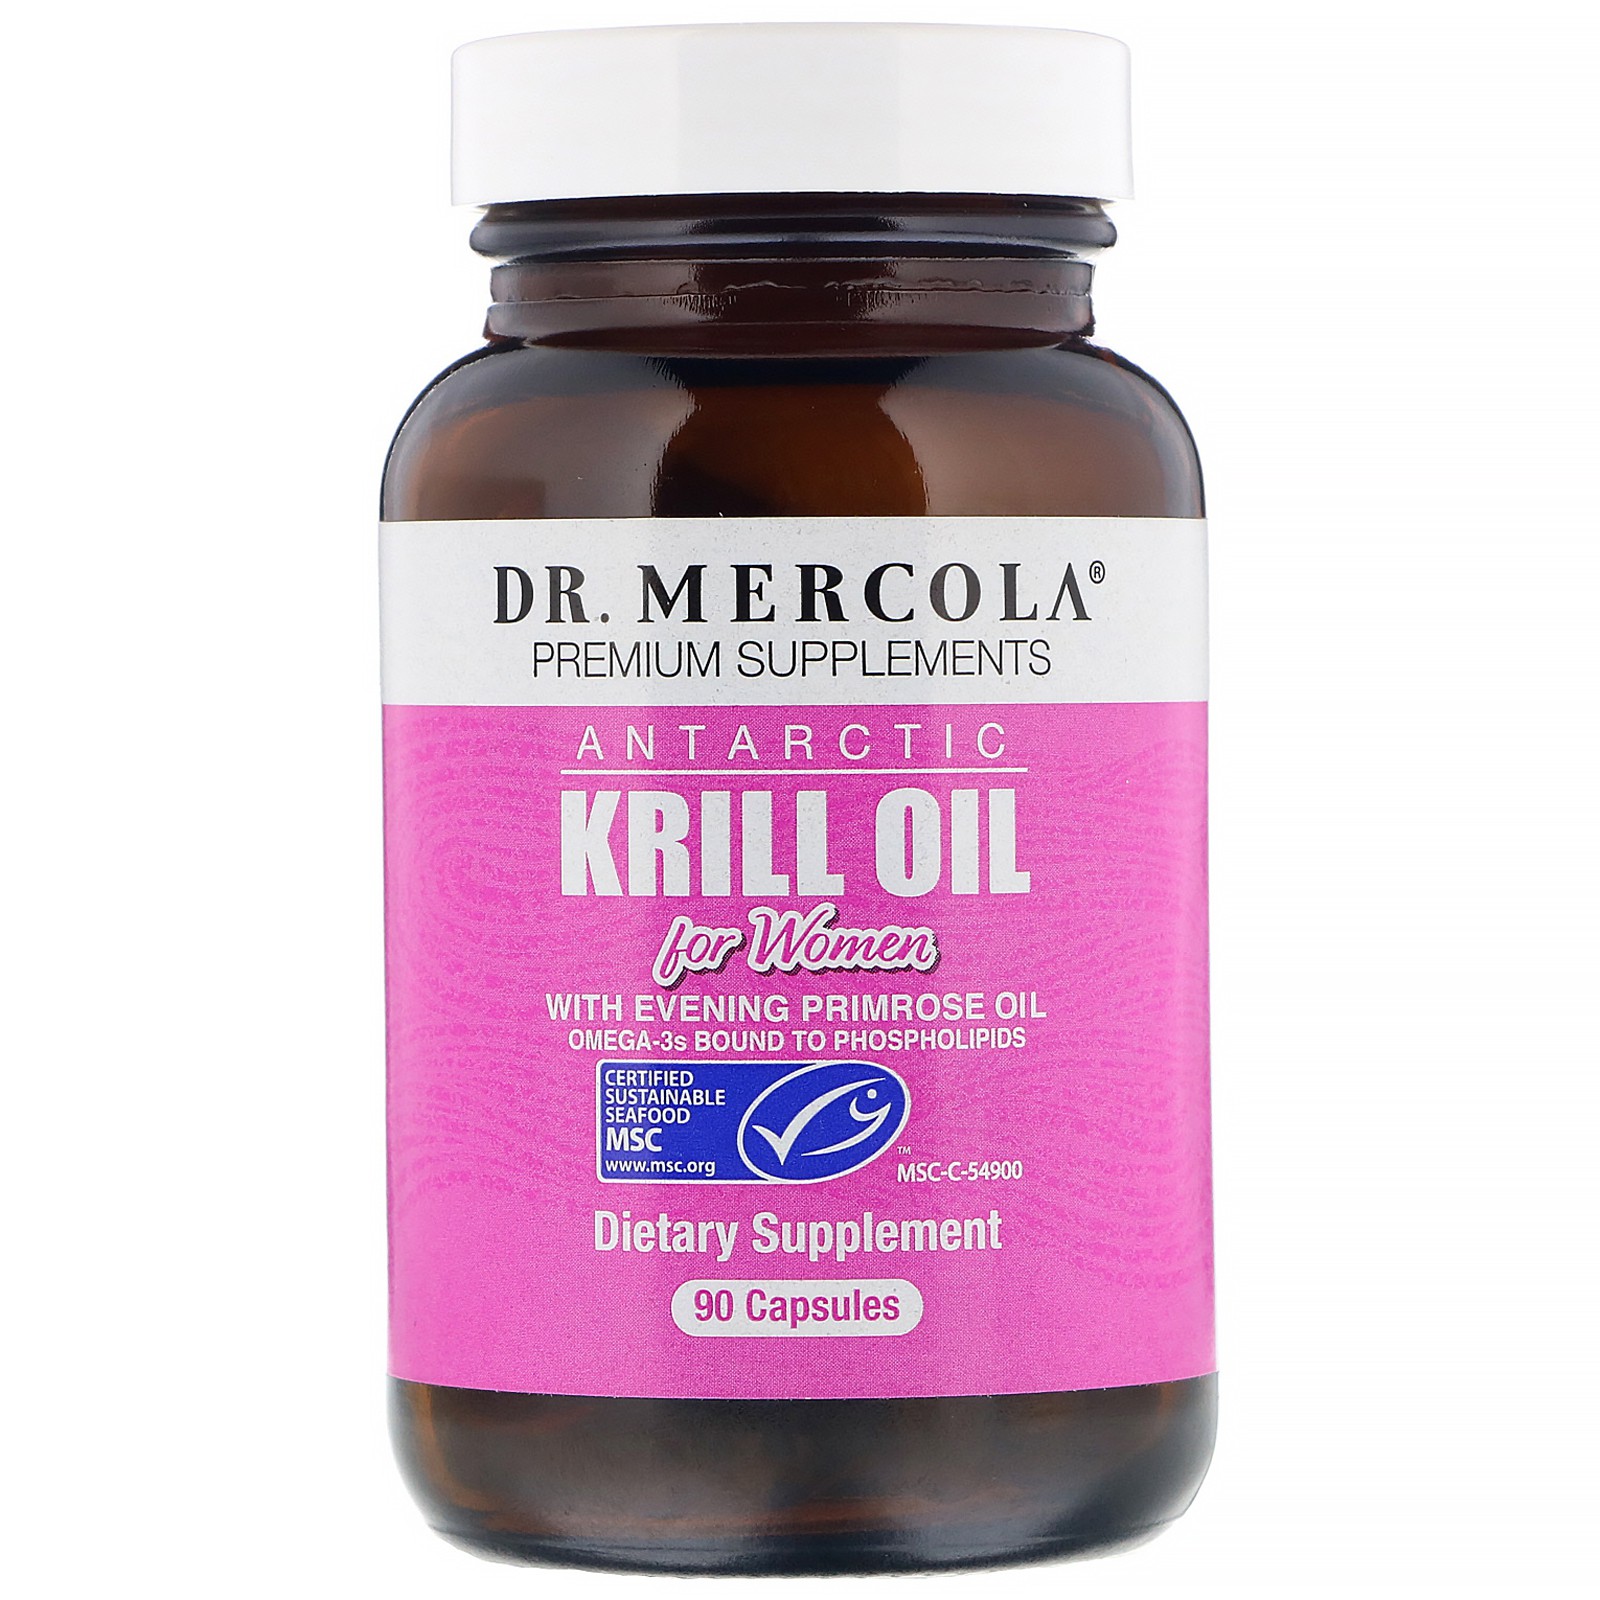 Krill oil for women